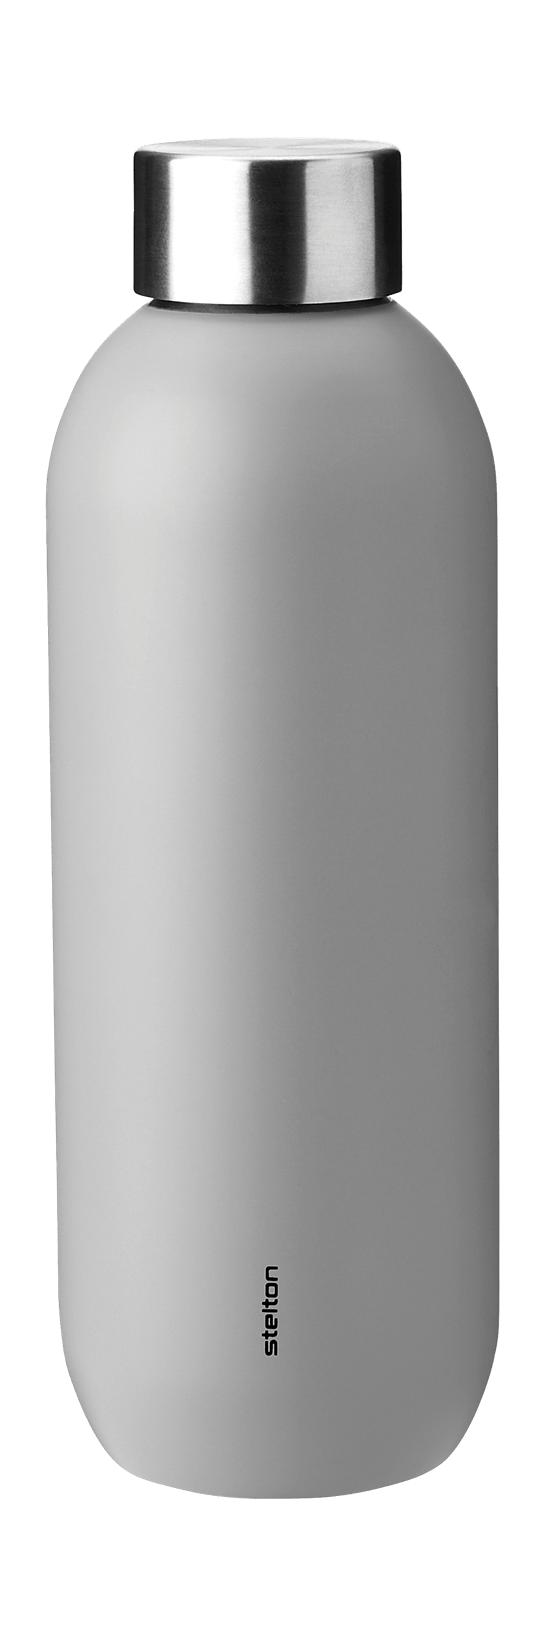 Stelton holder kjølig termo flaske 0,6 L, lysegrå